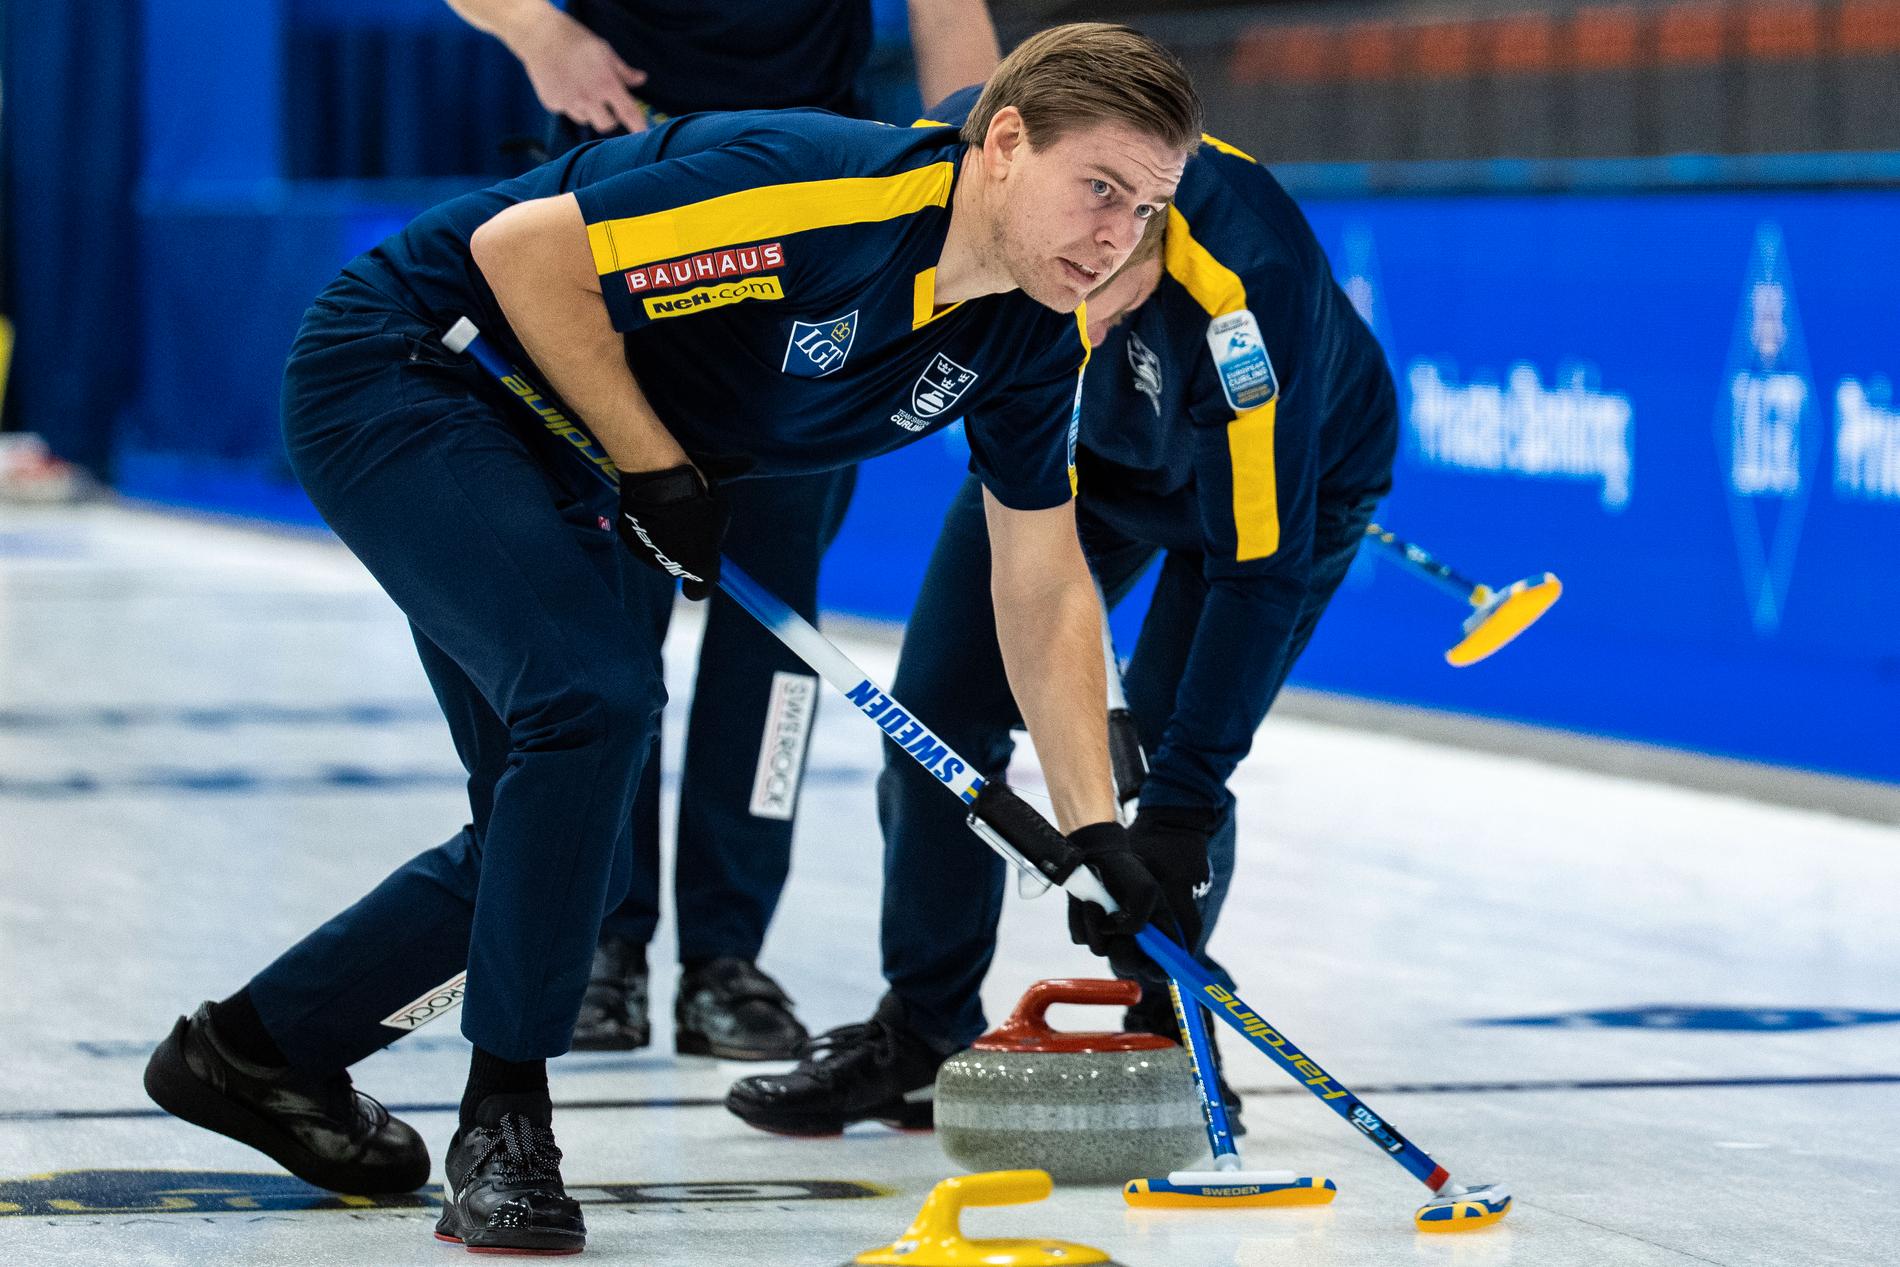 Sverige spelar bronsmatch i curling-EM på fredag kl 19.